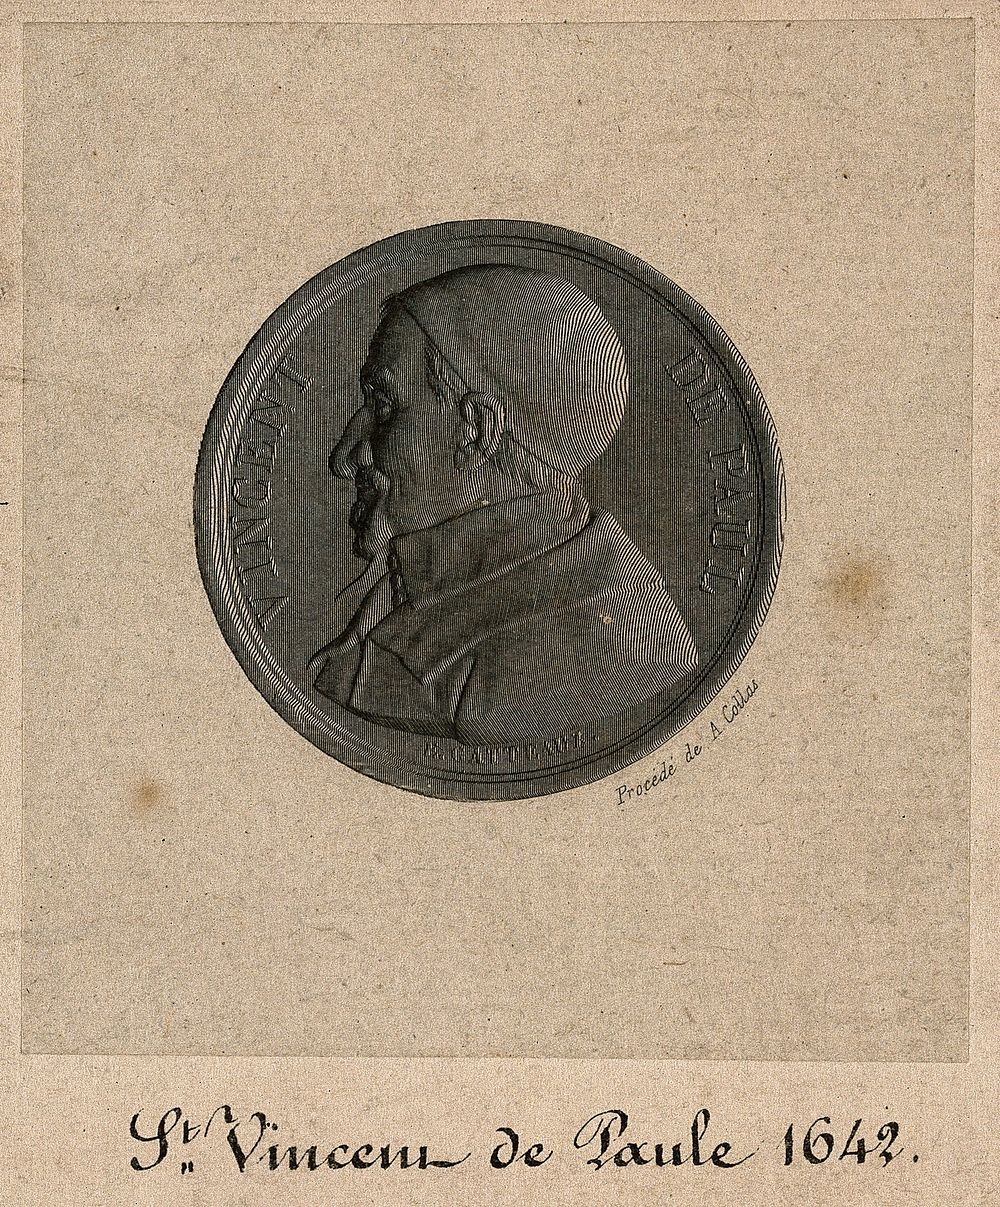 Saint Vincent de Paul. Line engraving by A. Collas after J. E. Gatteaux.